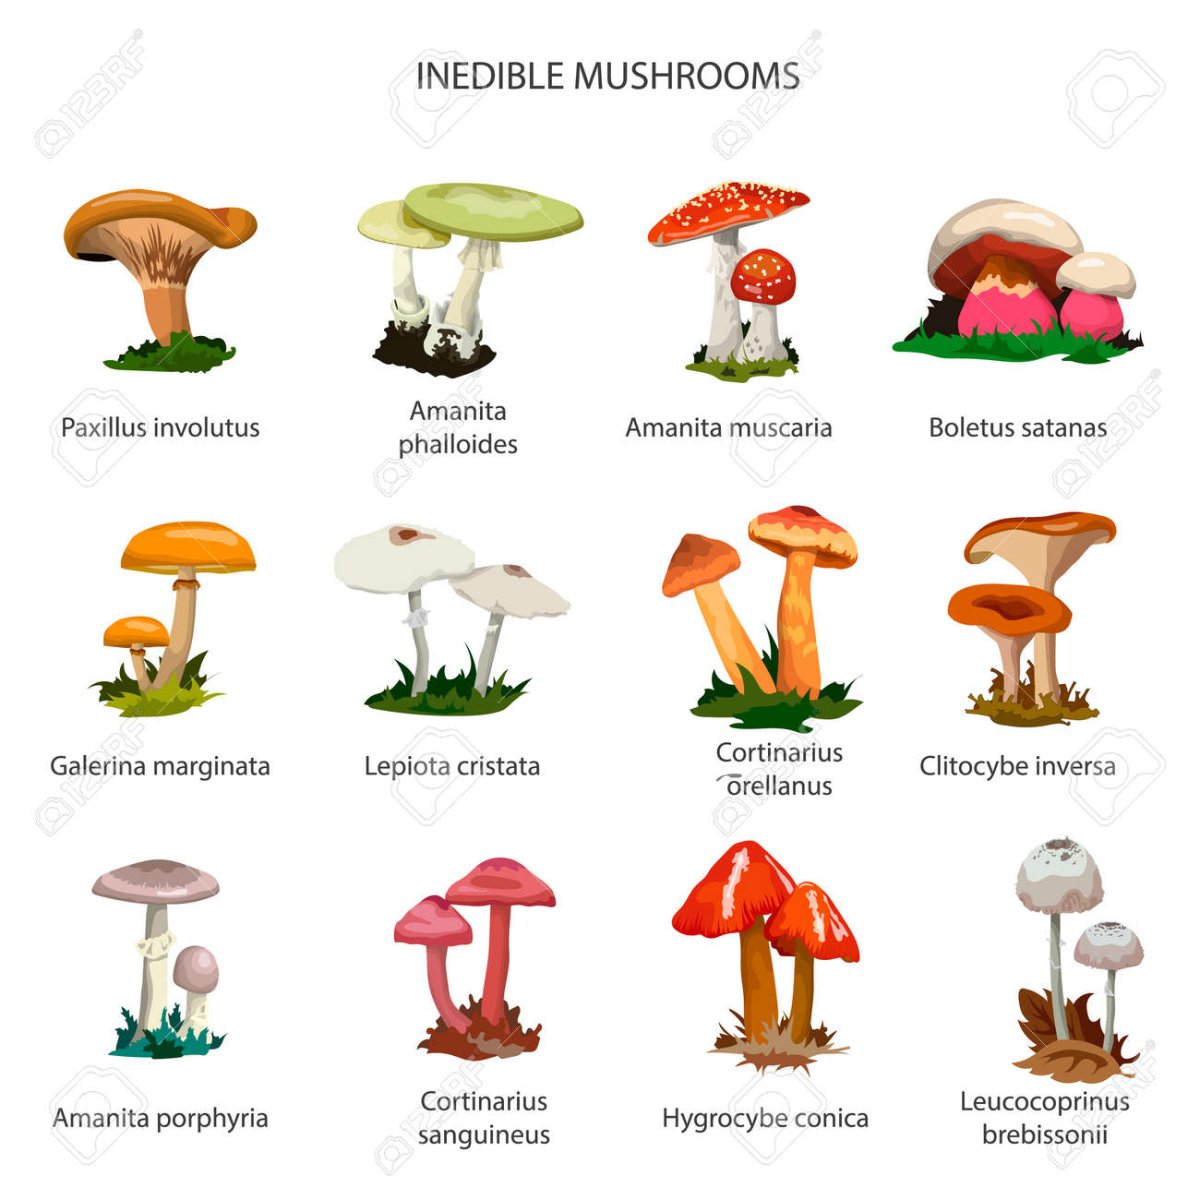 Съедобные грибы и несъедобные грибы